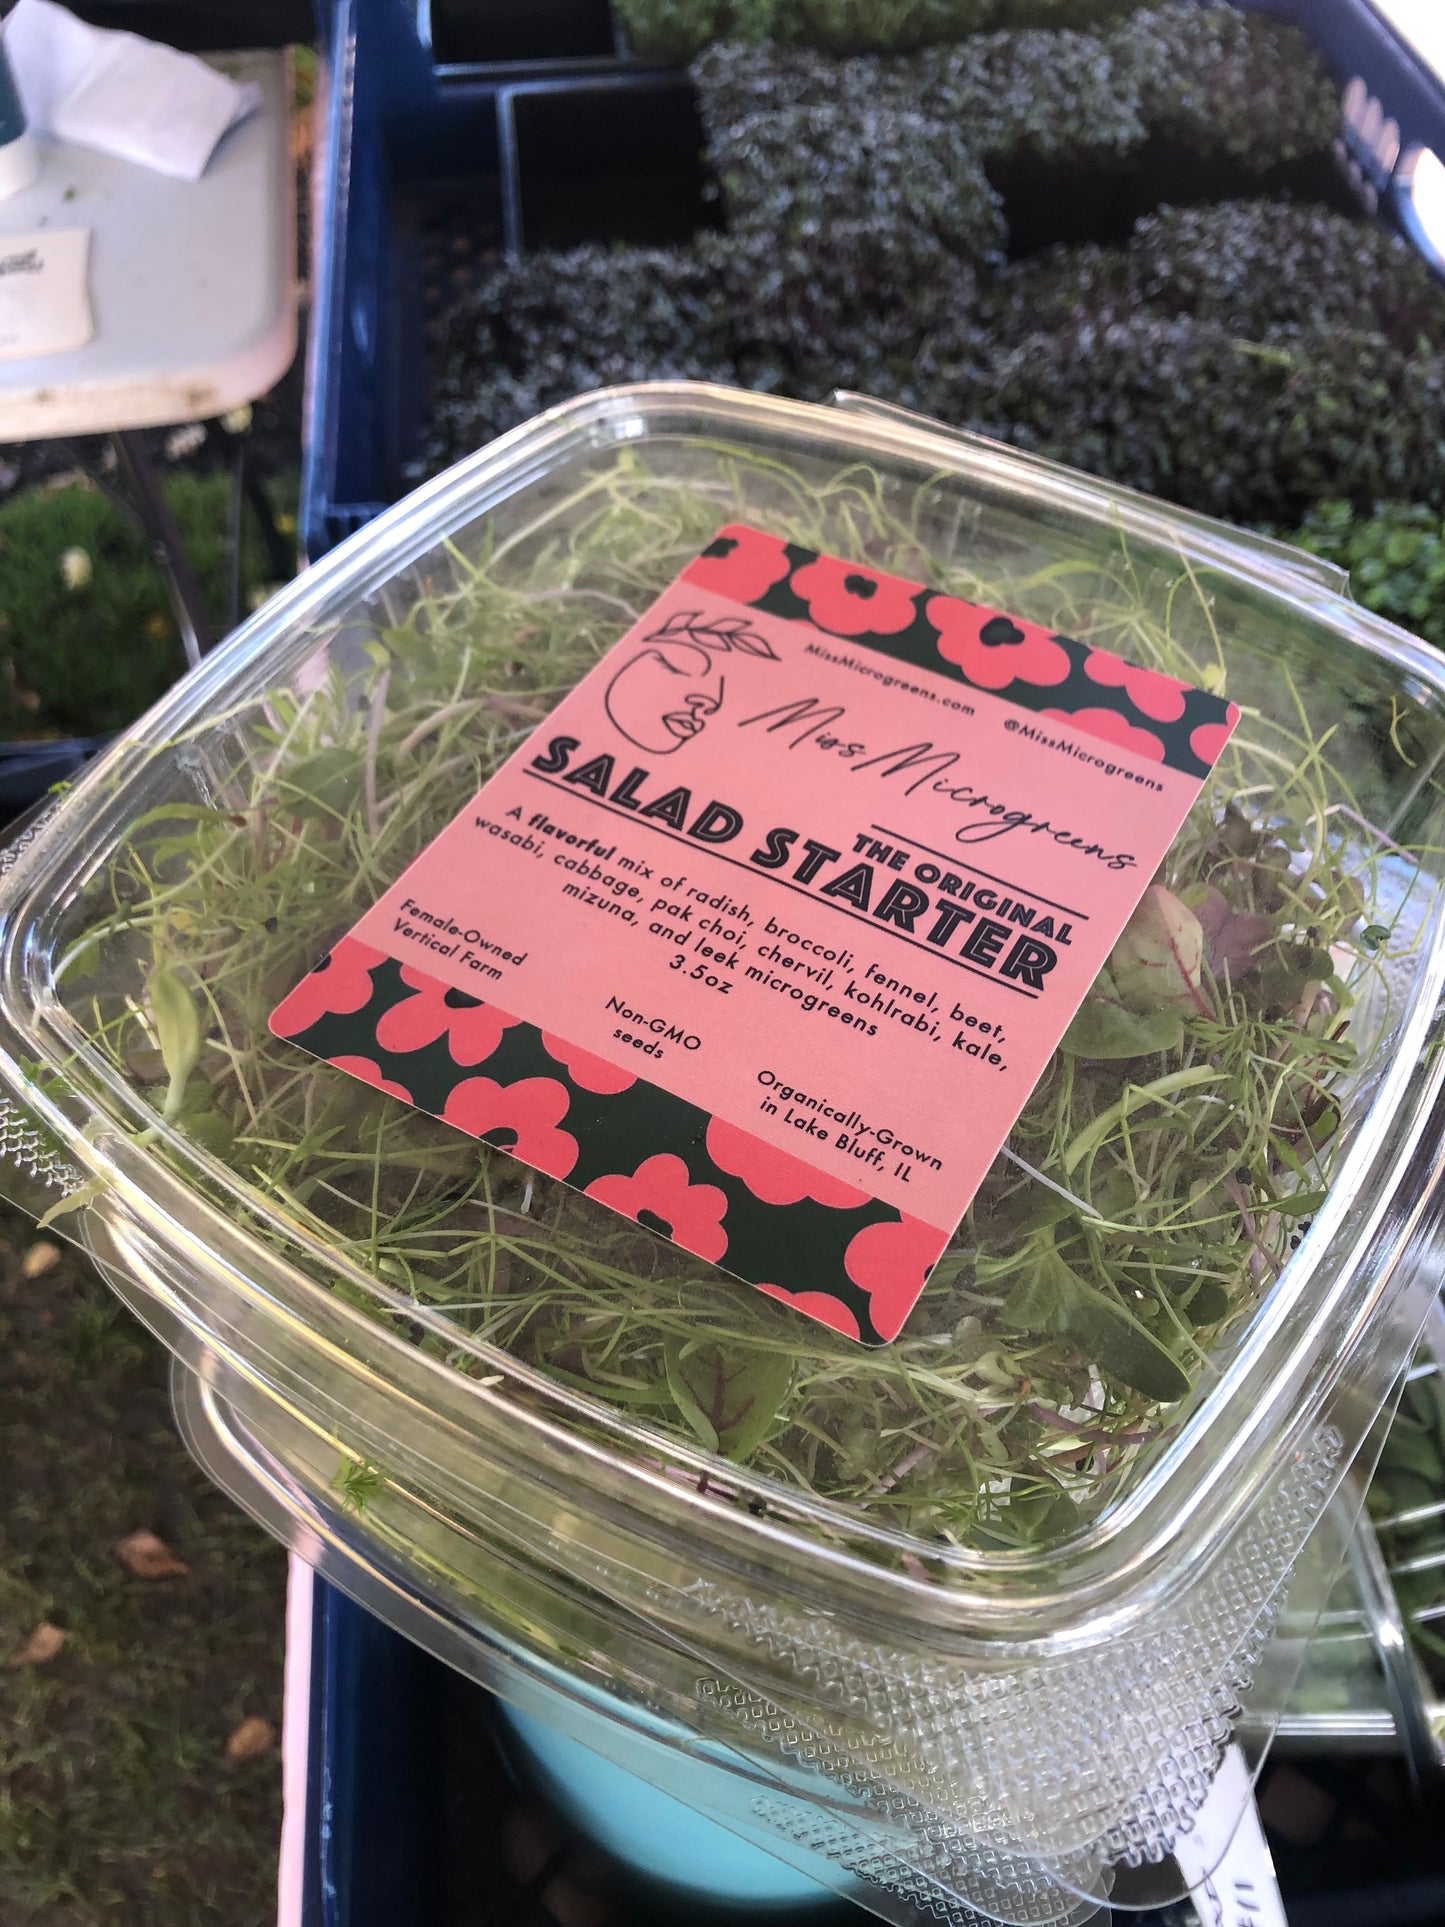 12 Deliveries - Salad Starter Mix